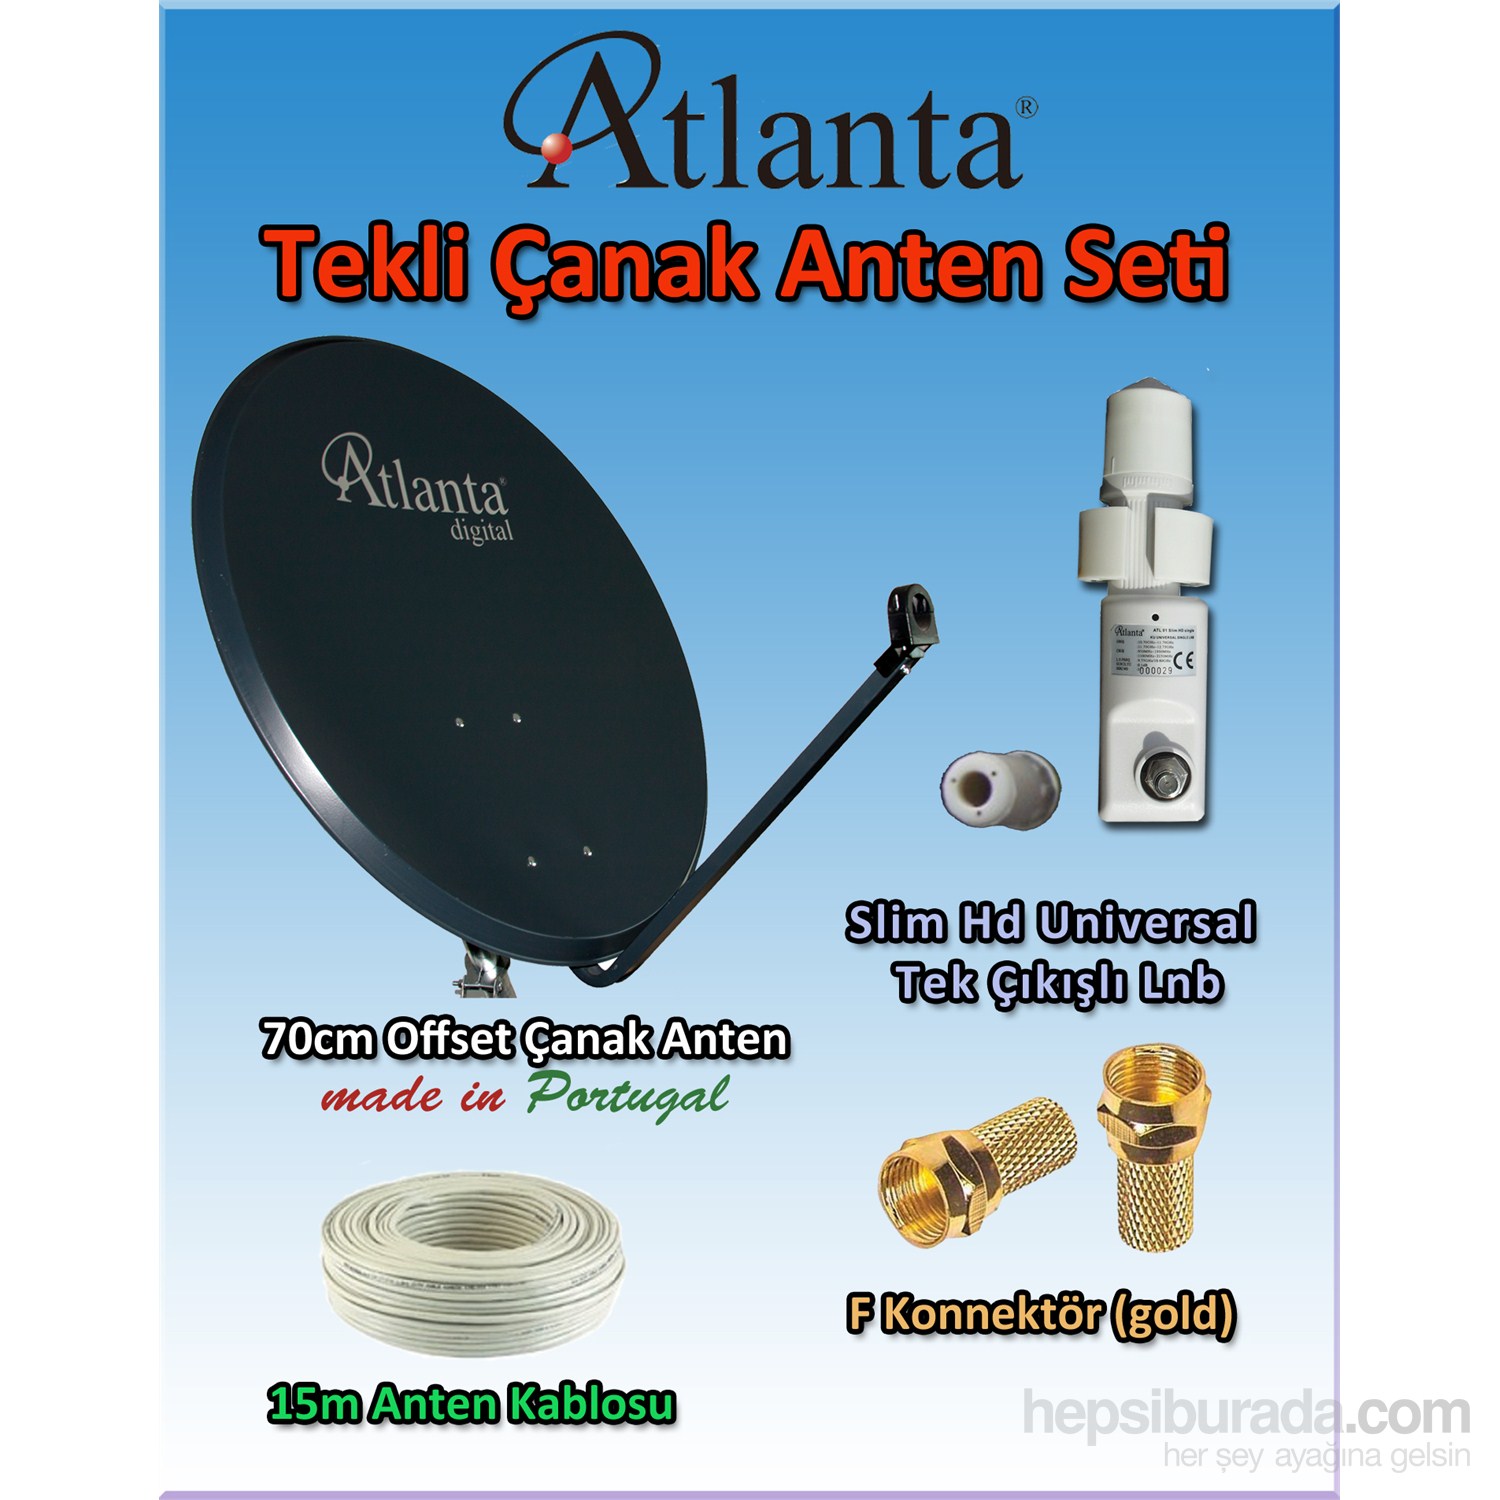 Atlanta Tekli Çanak Anten Seti